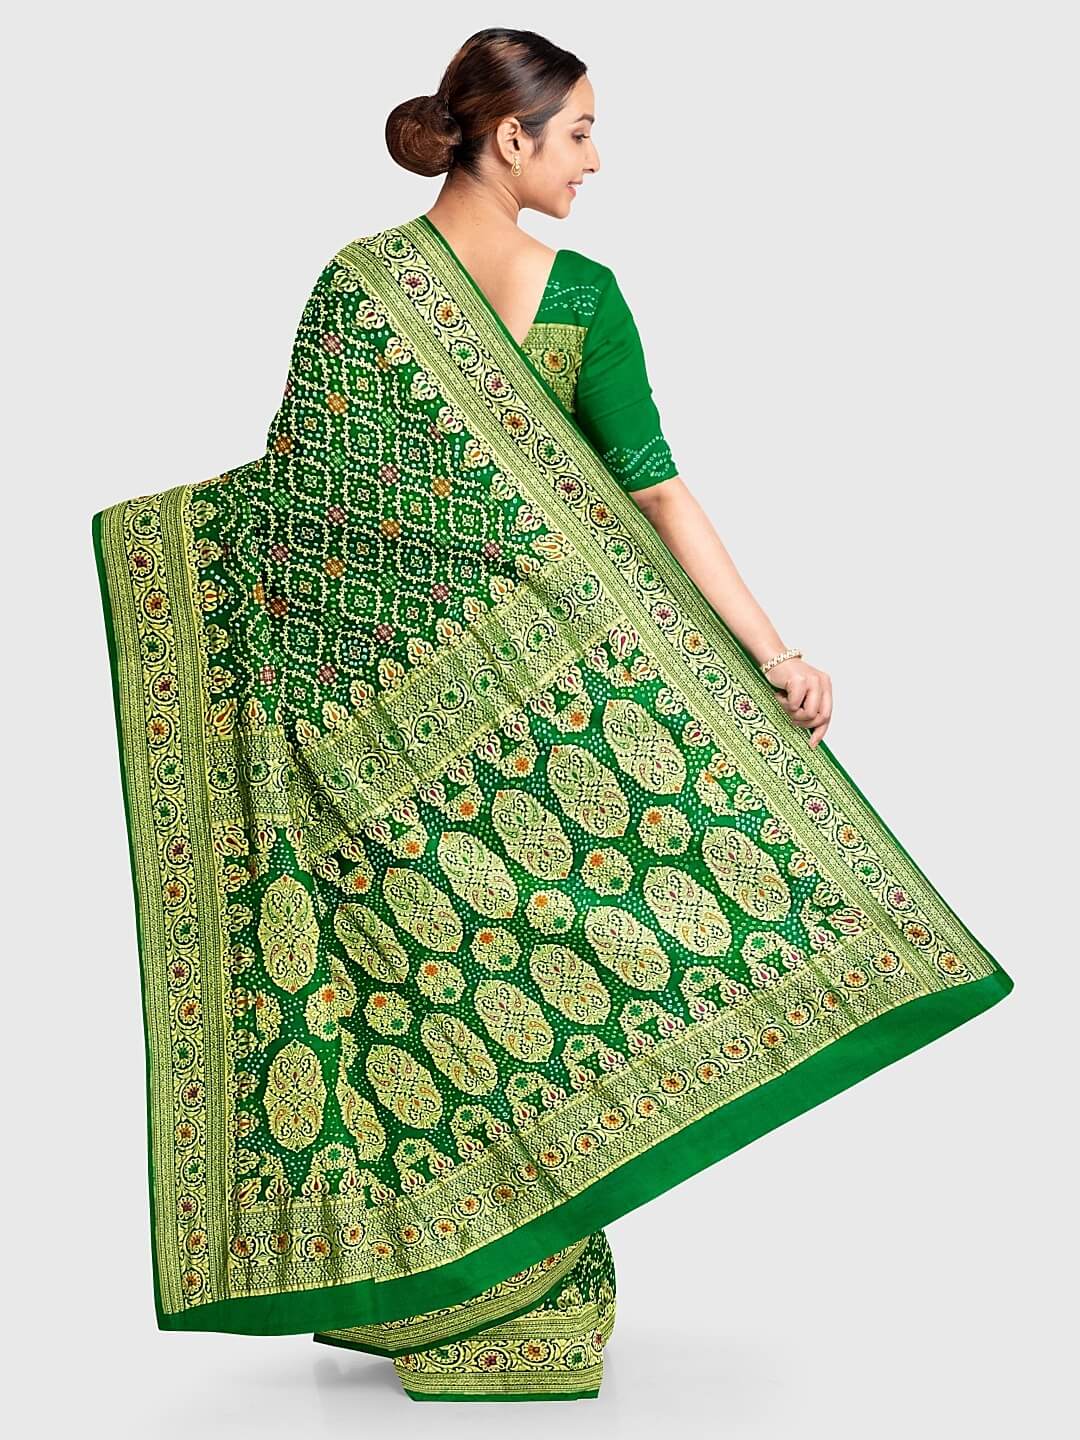 Karwa Chauth 2021 Styling Tips to wear Banarasi Saree with western fusion |  Karwa Chauth 2021 Styling Tips: करवा चौथ के मौके पर बनारसी साड़ी को देना  चाहती हैं मार्डन लुक, इन